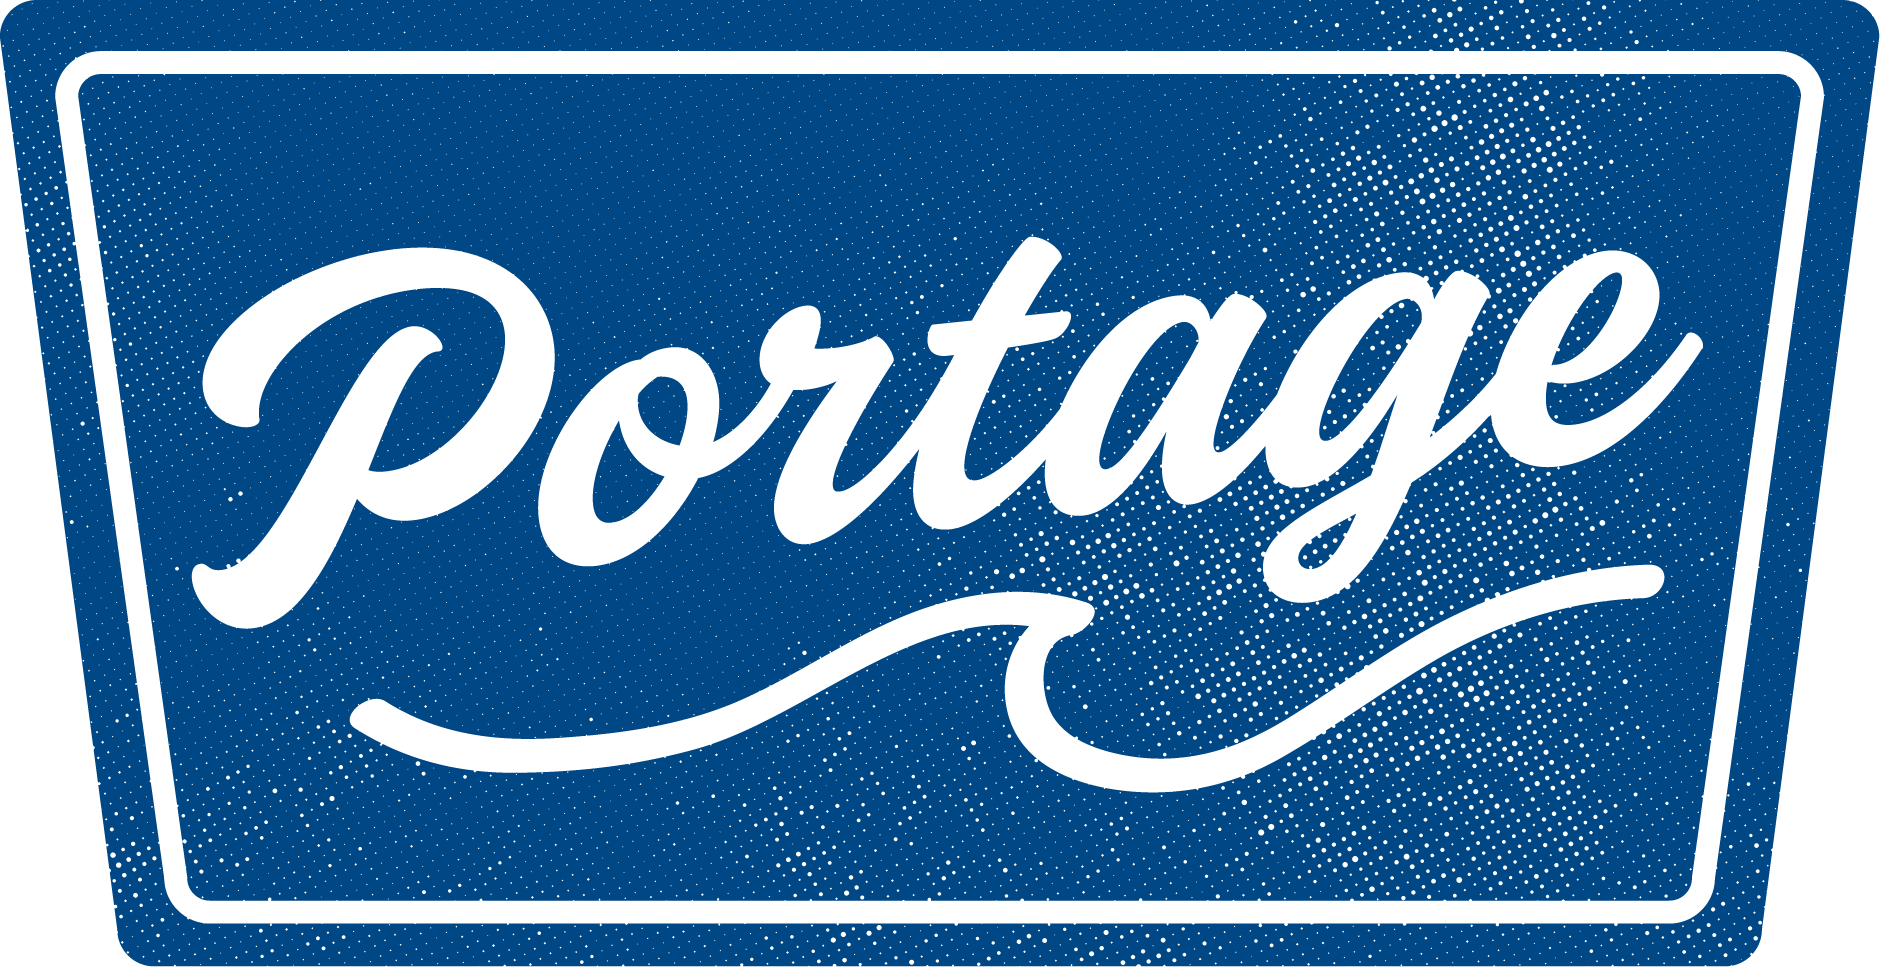 Portage-MI.png